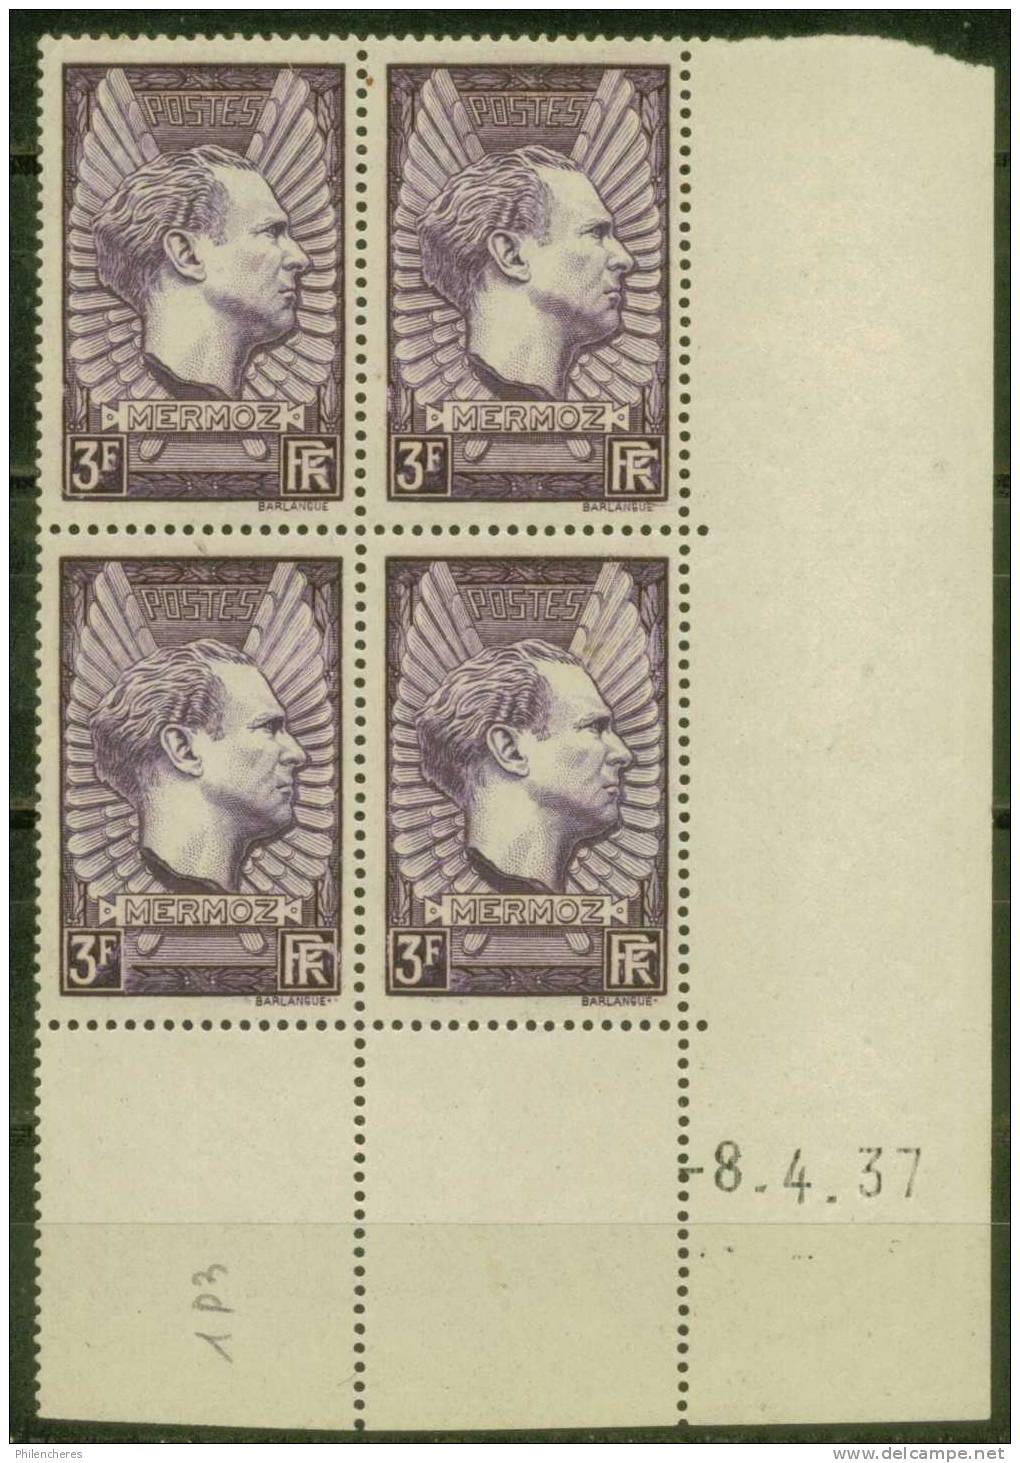 France Bloc De 4 - Coin Daté 1937 - Yvert N° 338 X Presque Xx - Cote 70 Euros - Prix De Départ 23 Euros - 1930-1939